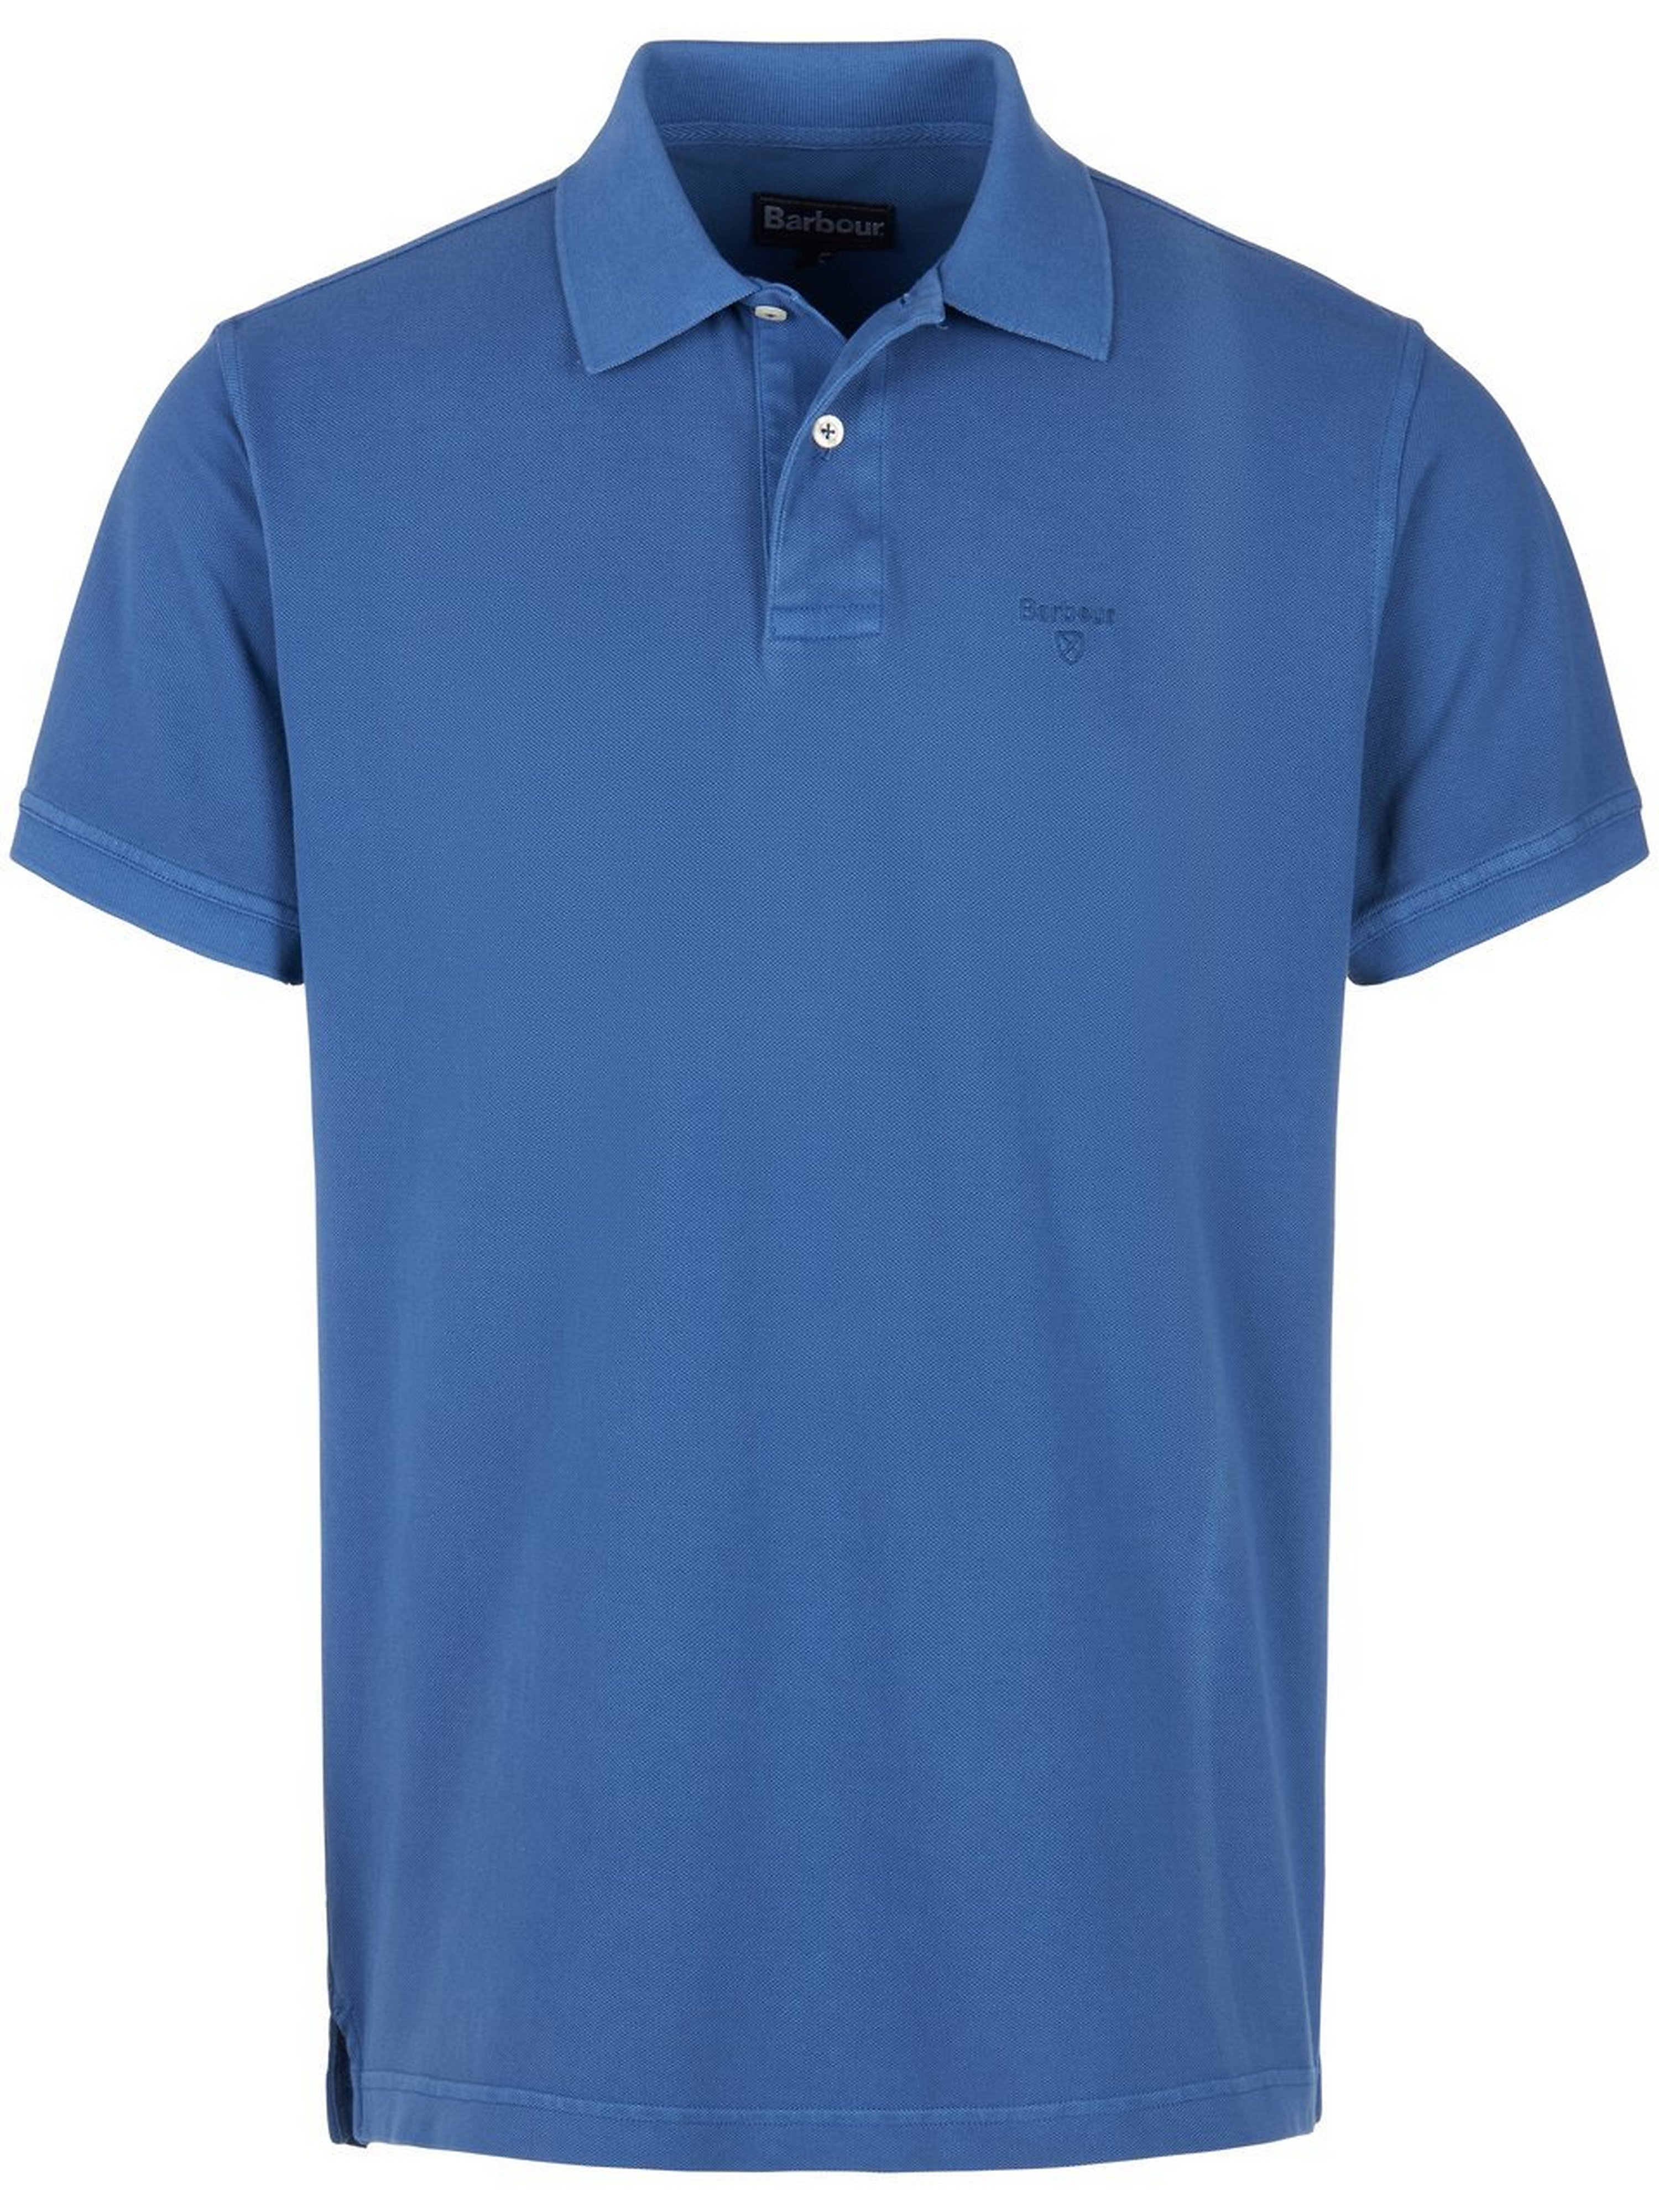 Poloshirt Van Barbour blauw